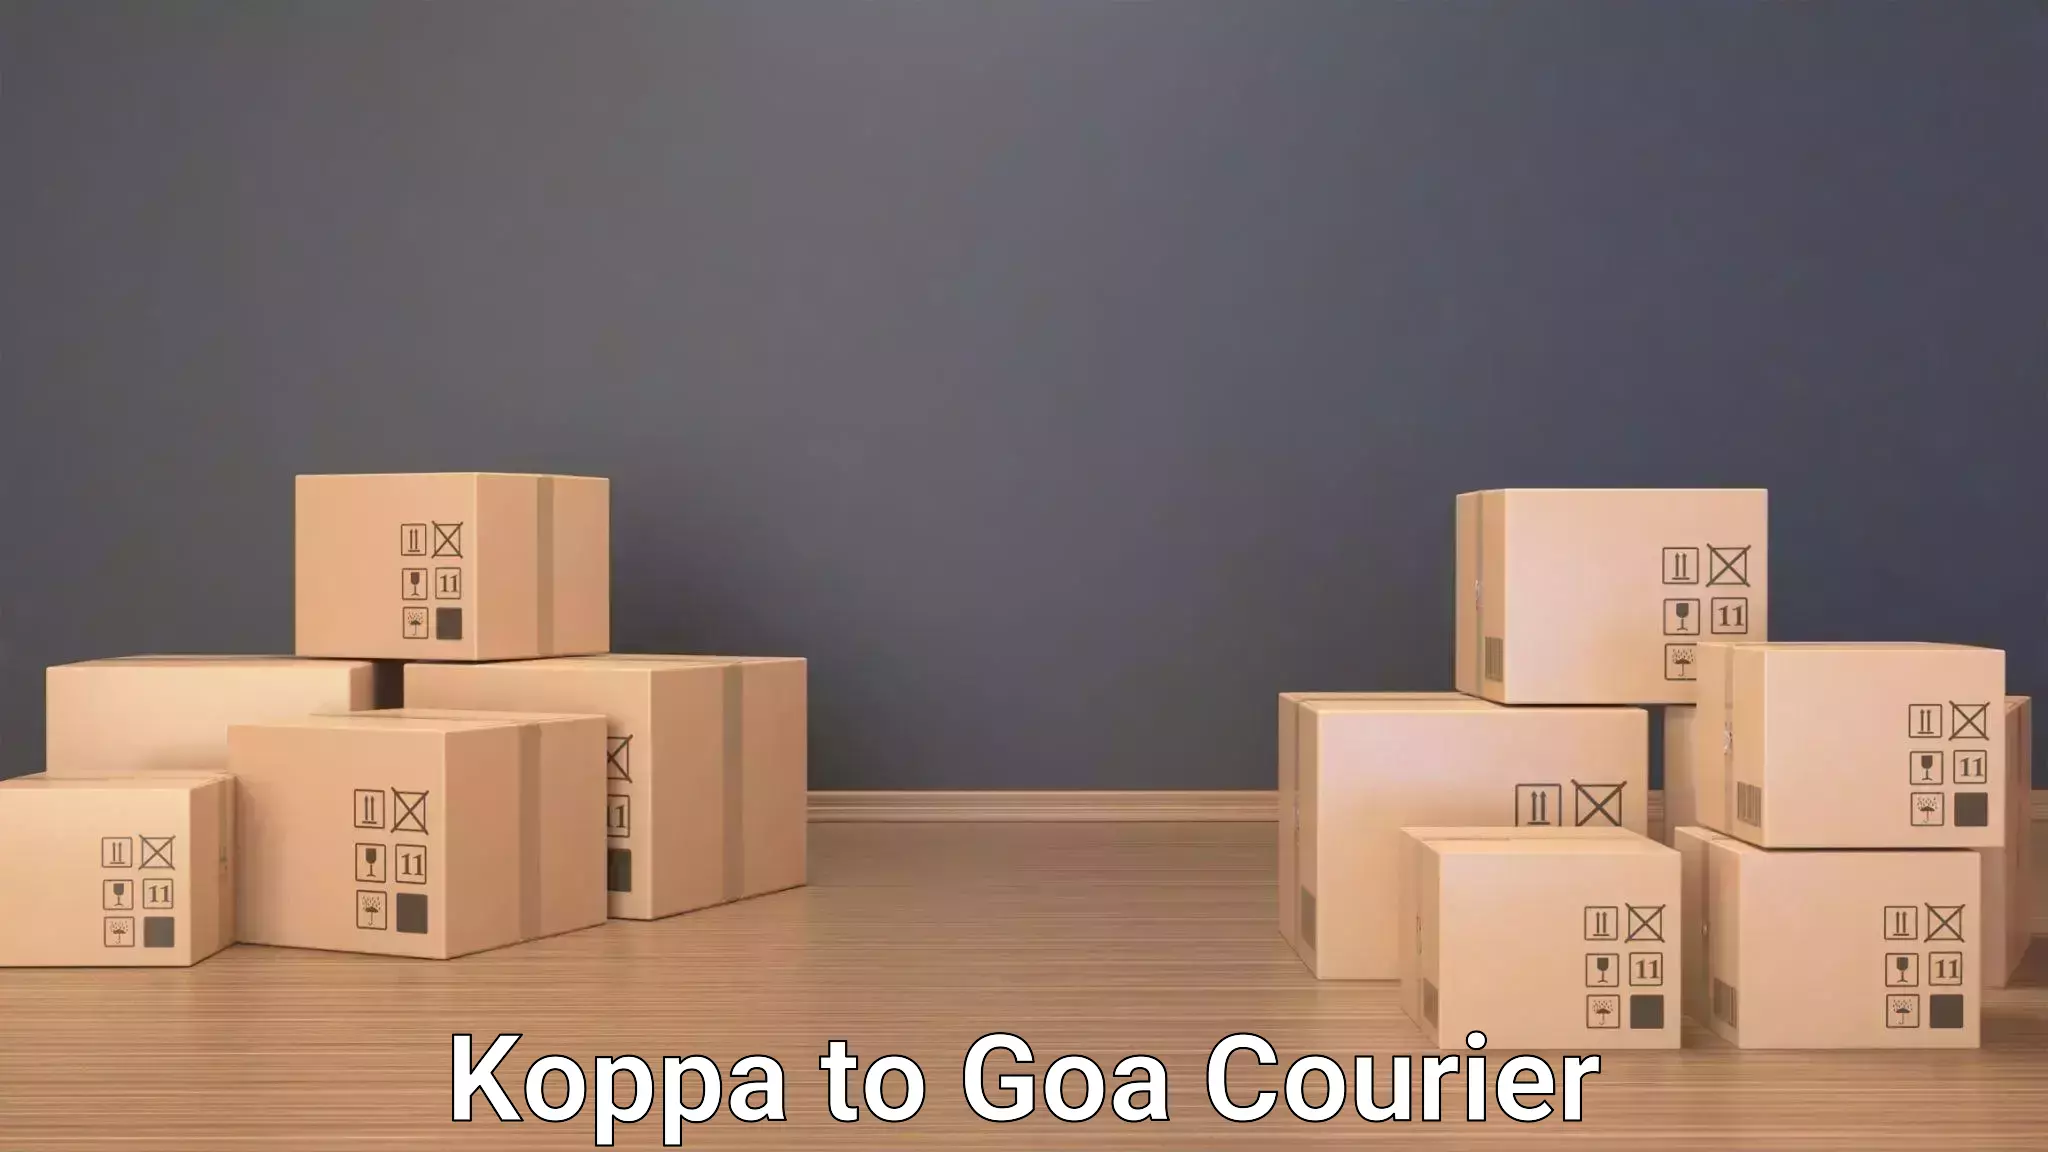 Baggage transport scheduler Koppa to Goa